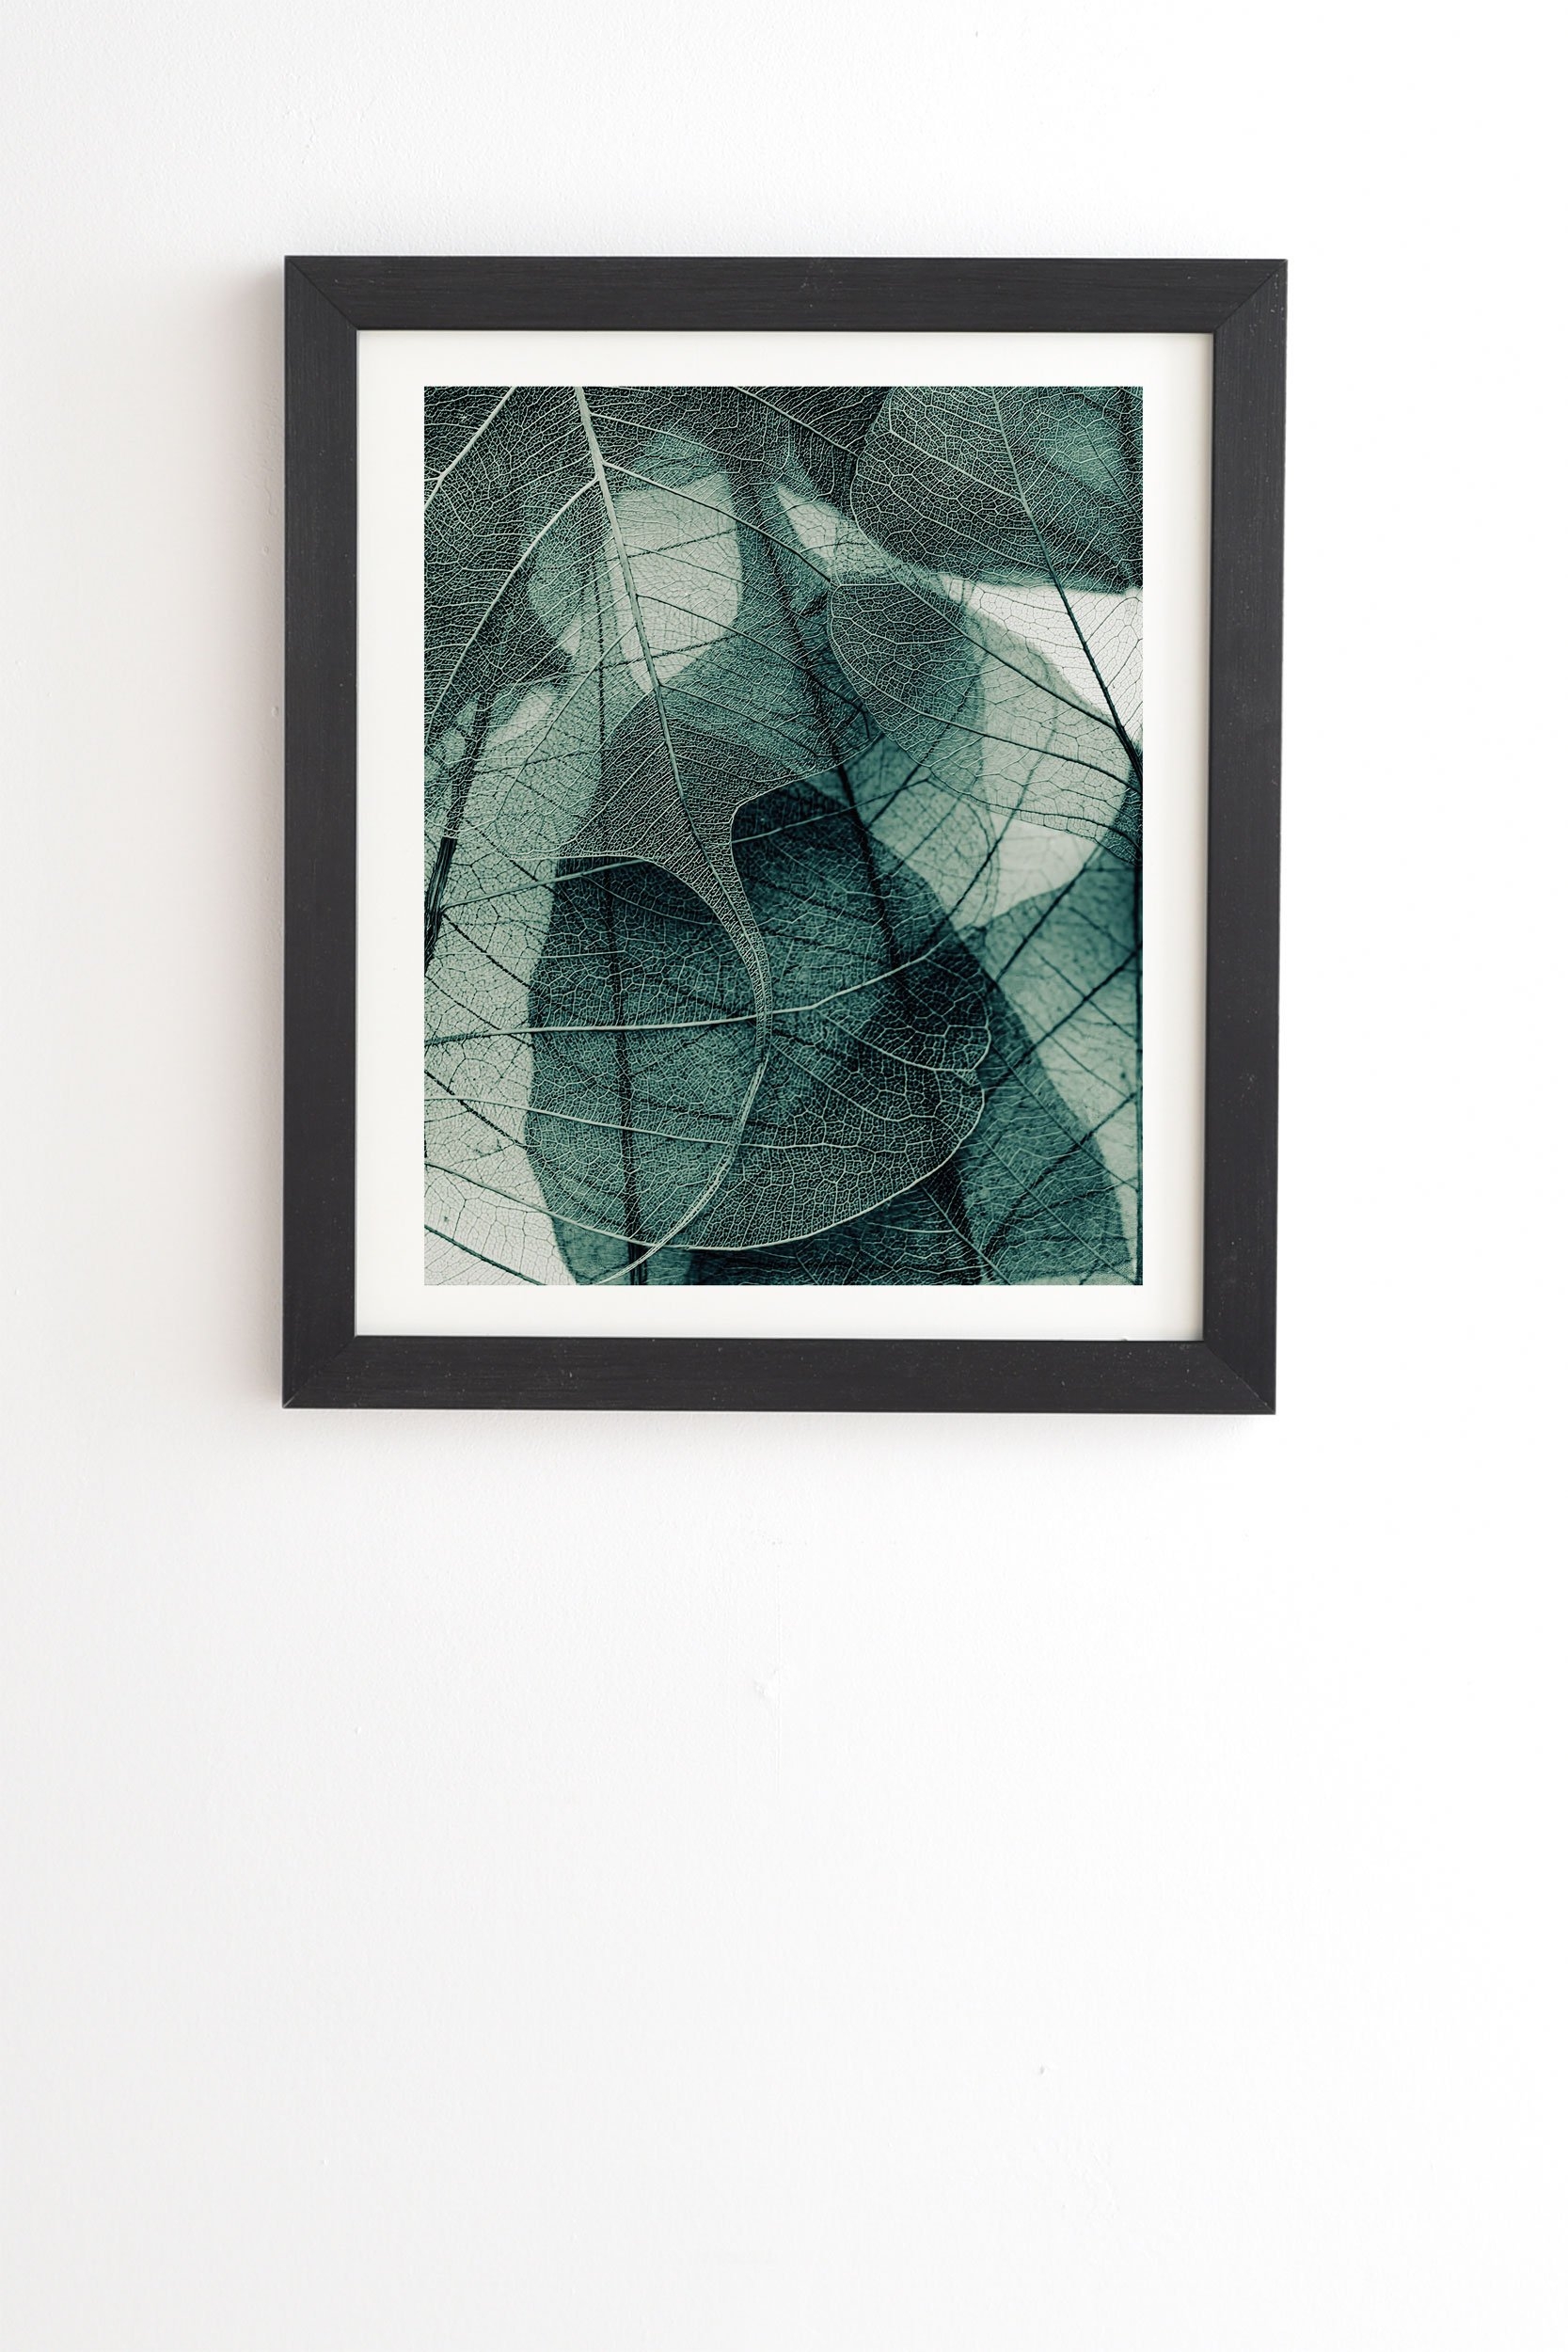 Ingrid Beddoes Olive Green Black Framed Wall Art - 11" x 13" - Image 0